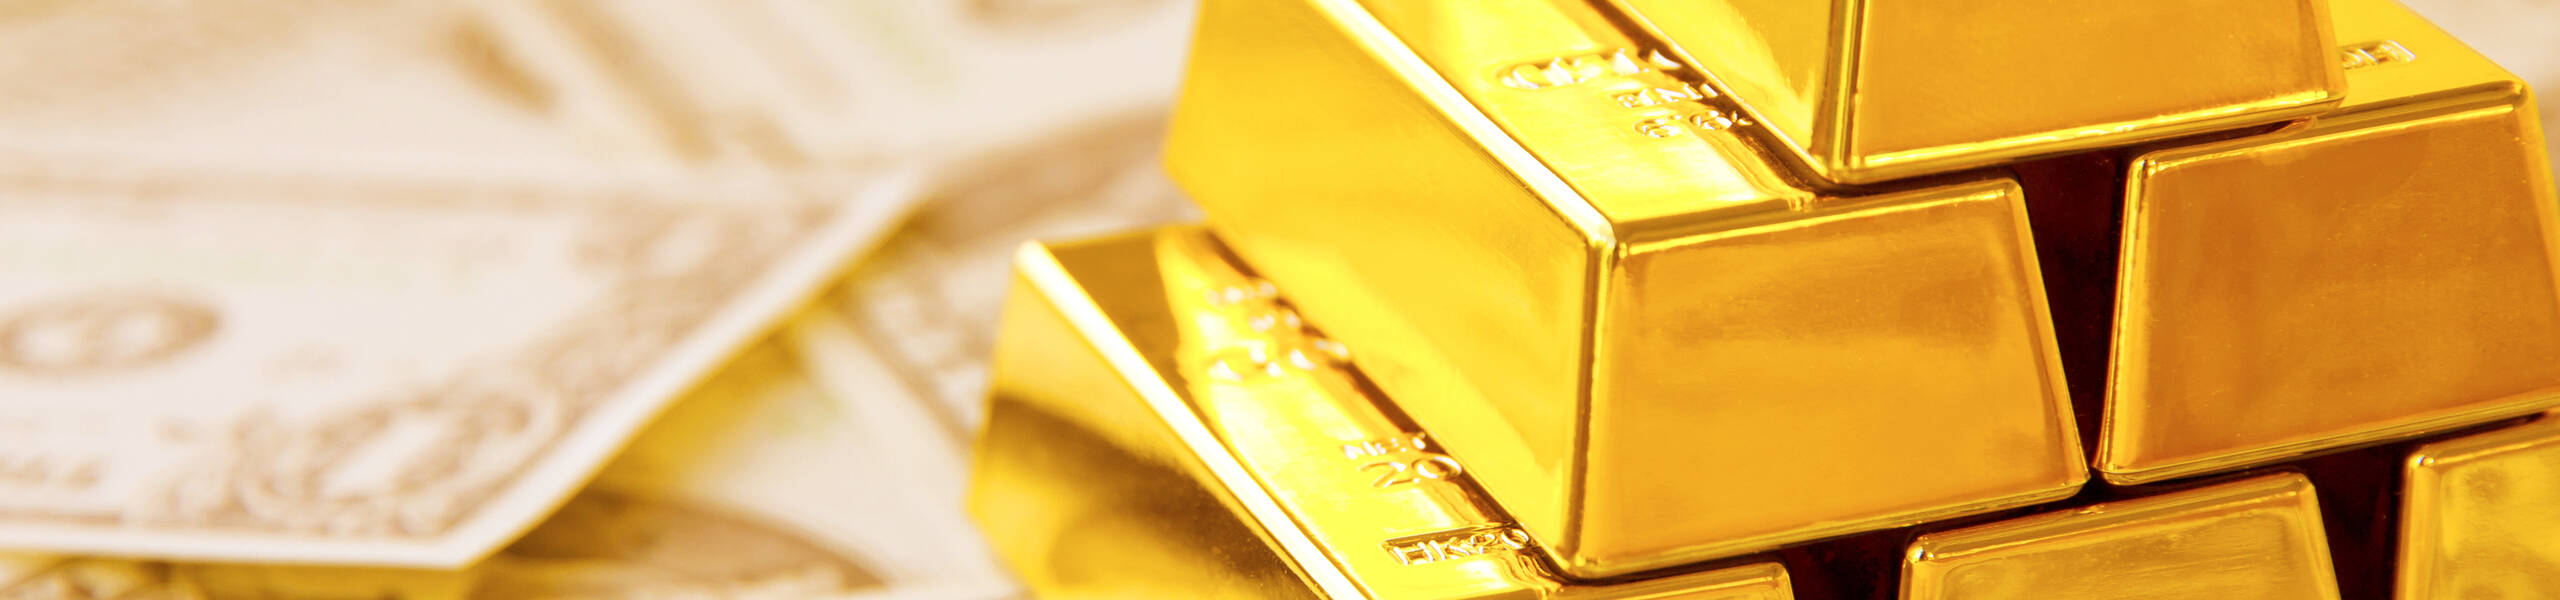 التقرير الأسبــــوعي - هل ستعود أسعار الذهب إلى ما فوق 1900 دولار؟